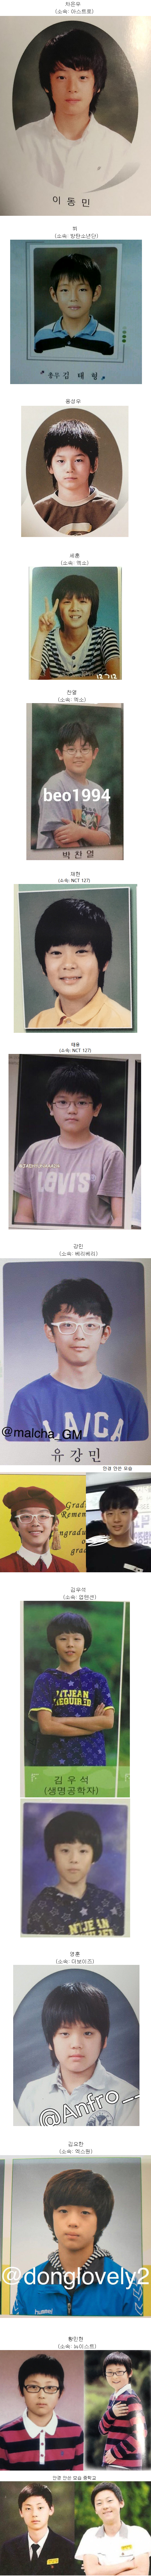 얼굴천재 남자아이돌들의 초등학교 졸업사진